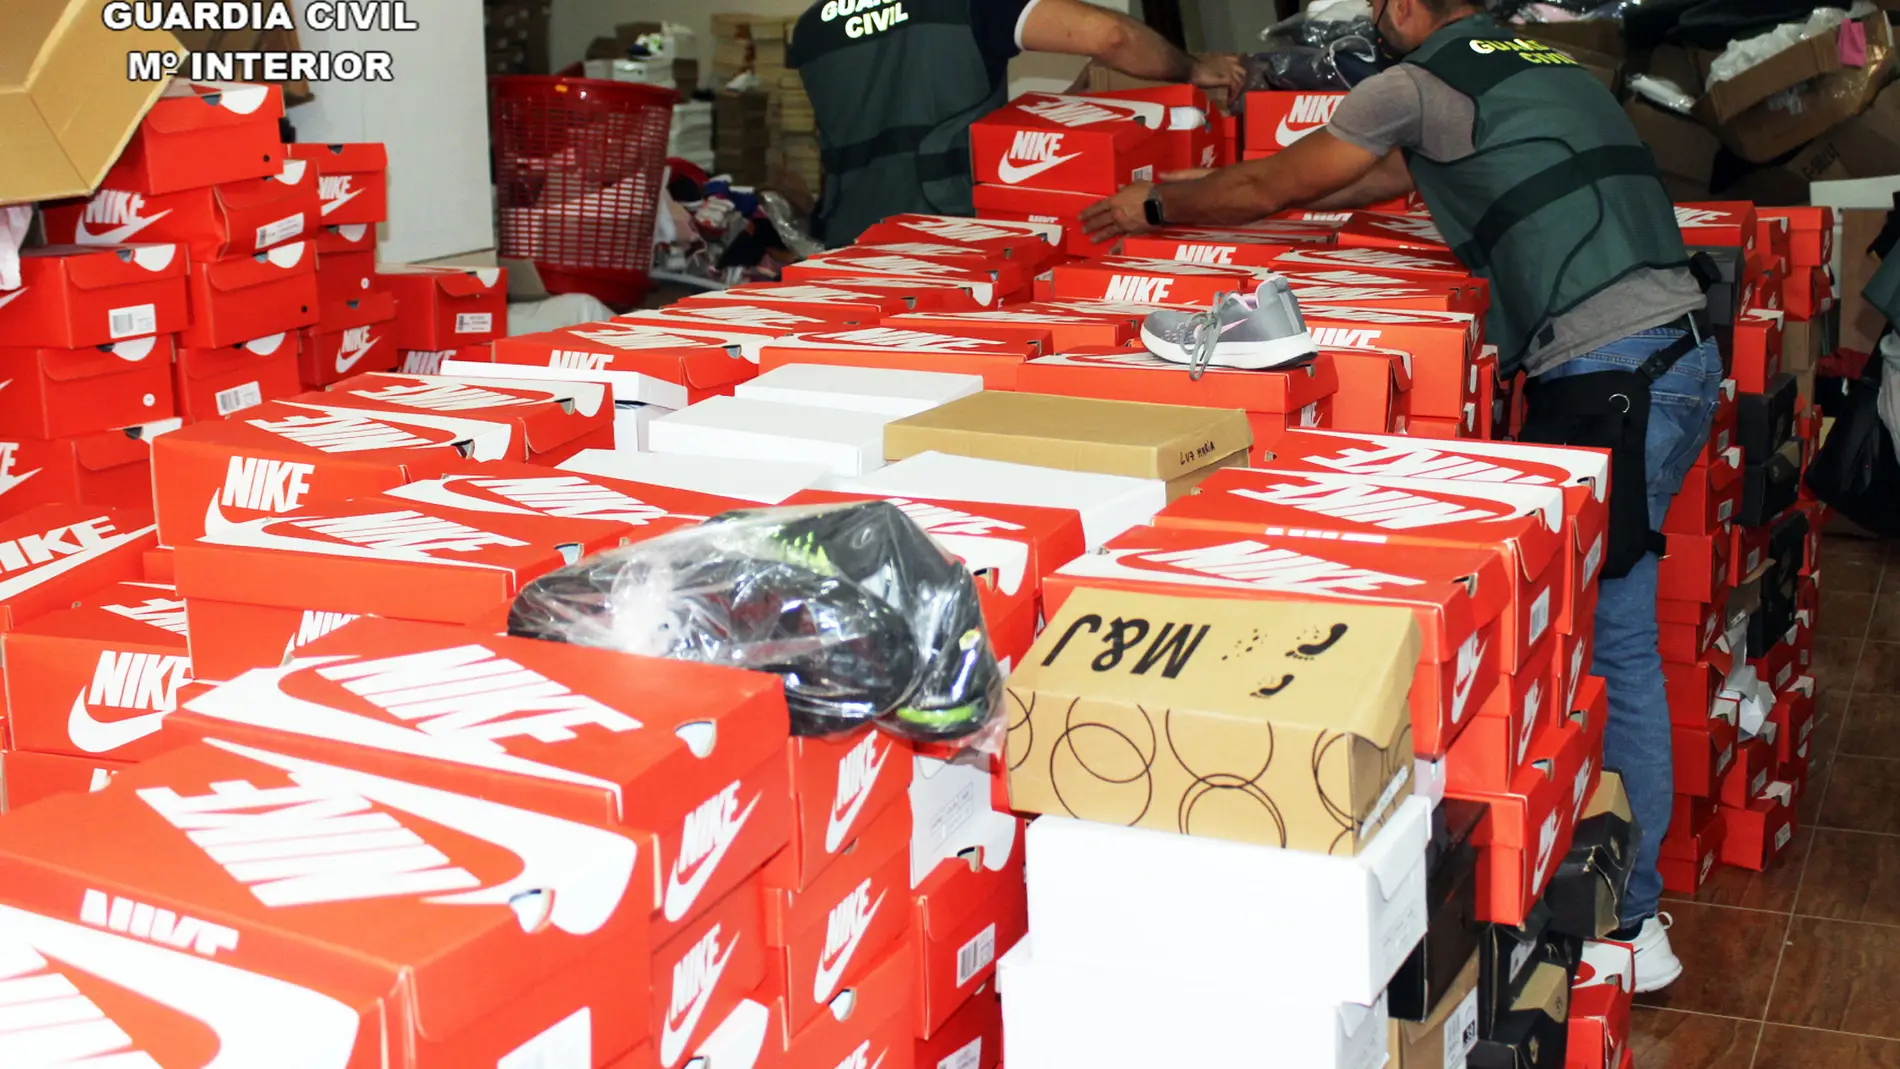 Guardia Civil desmantela en Archena una organización criminal especializada en falsificación y distribución de ropa calzado | Cero Radio